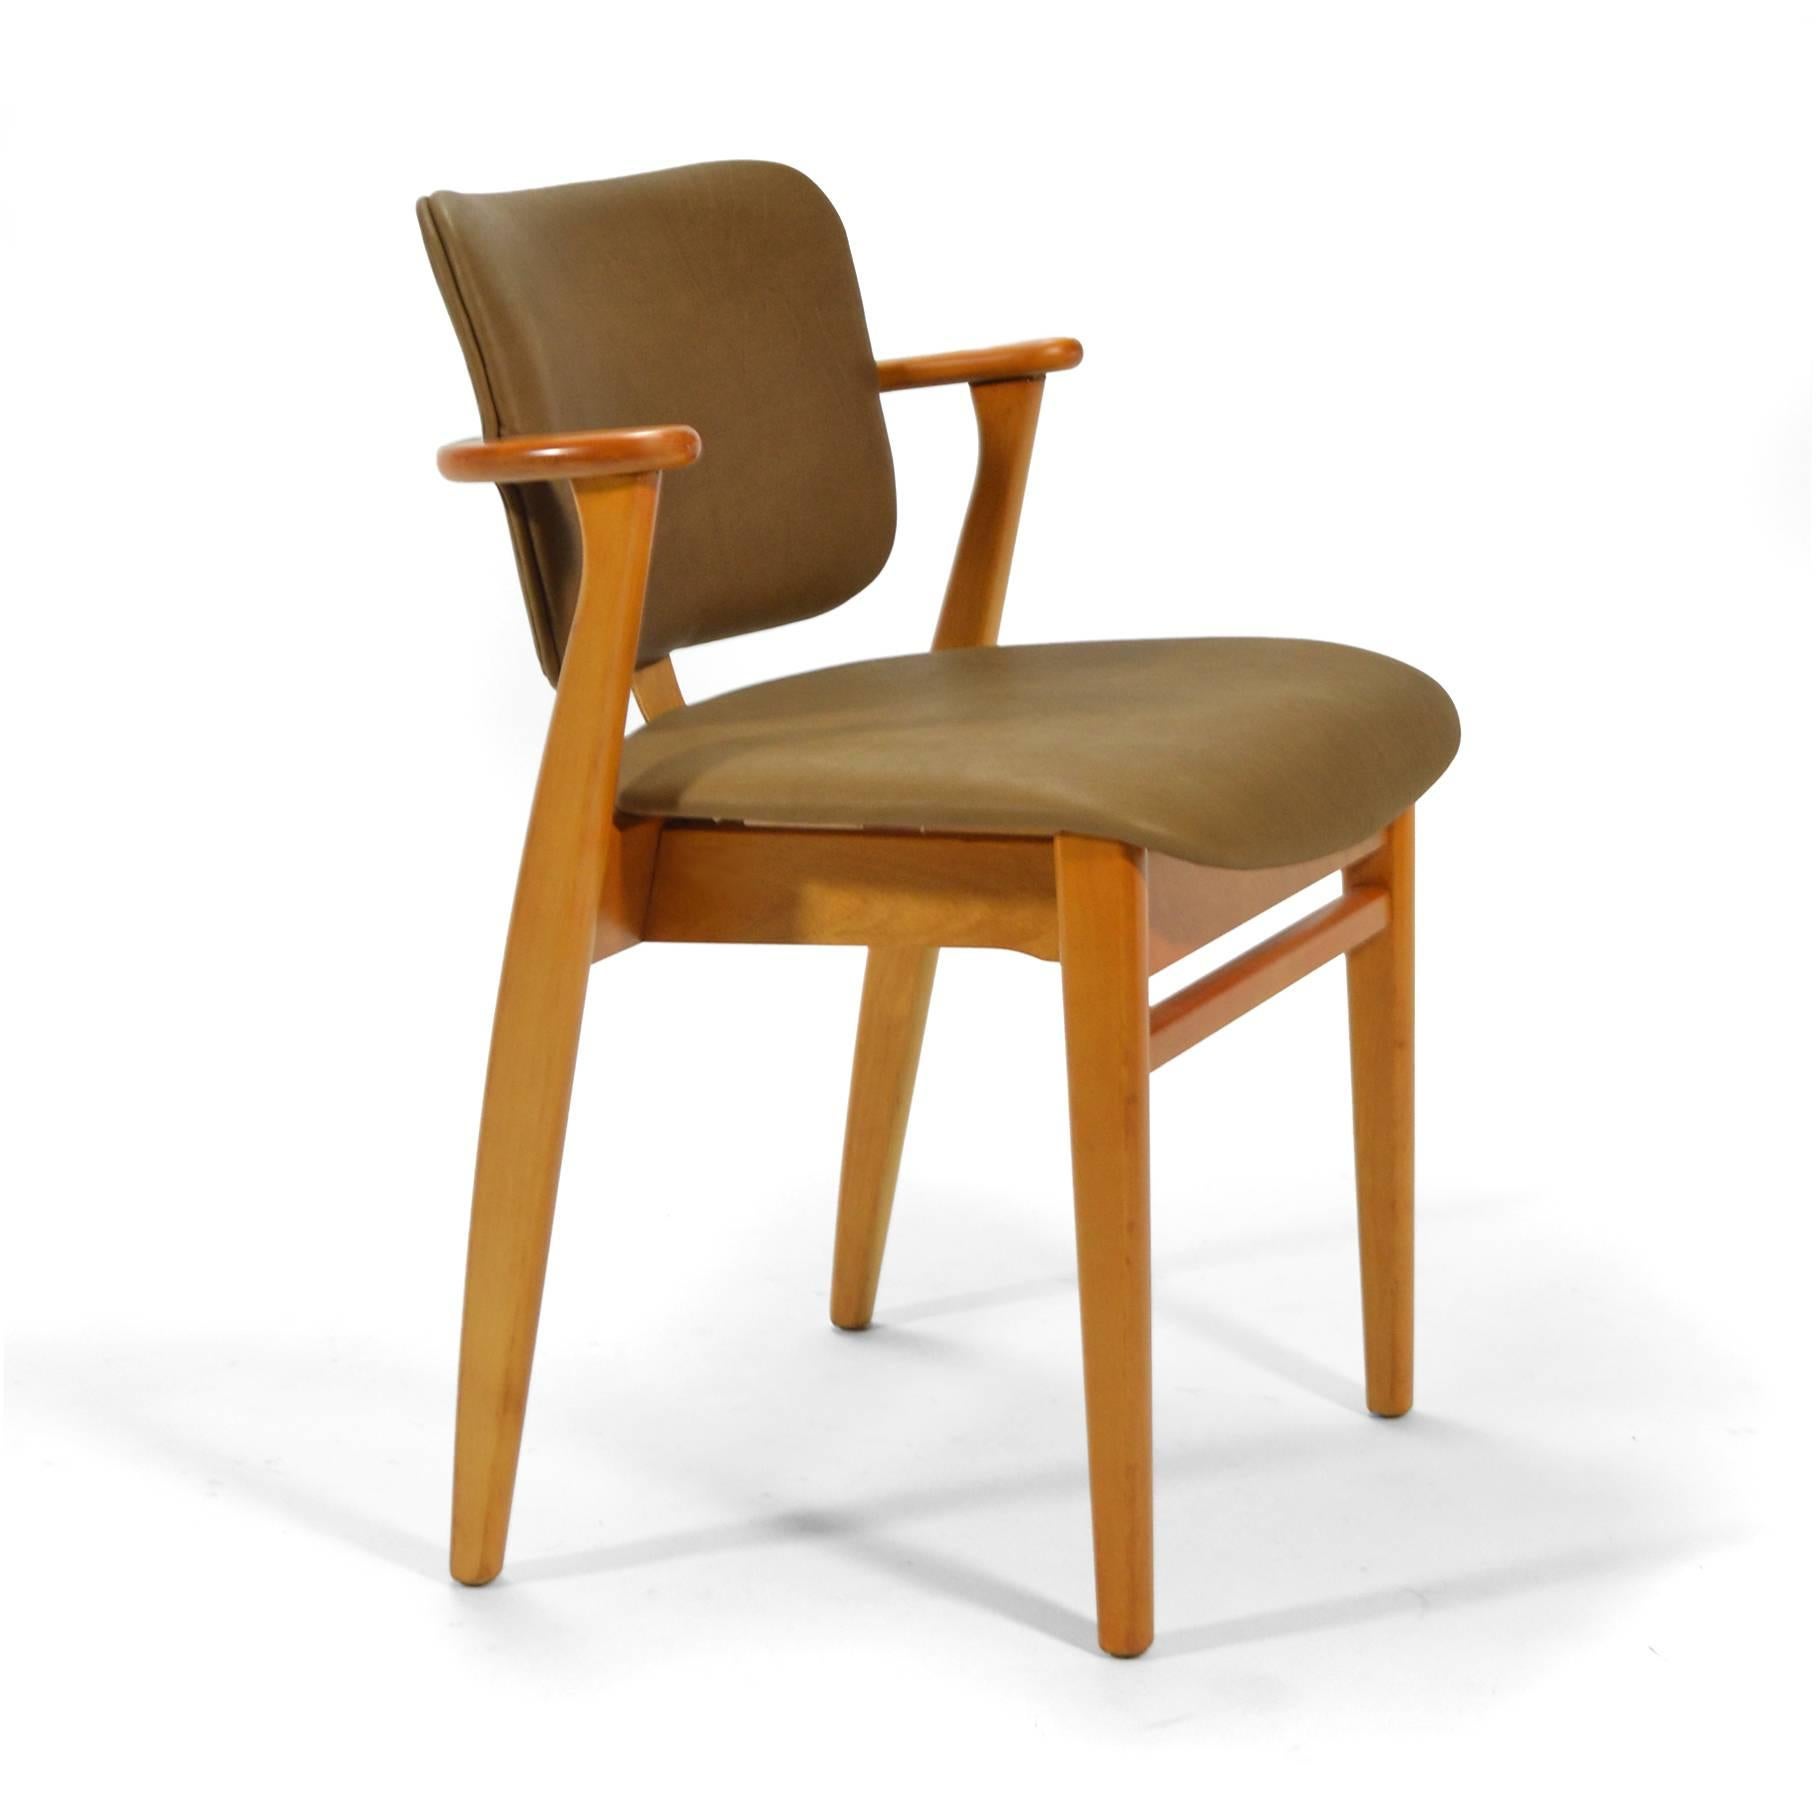 Der Domus-Stuhl, ein wunderbarer Entwurf von Ilmari Tapiovaara aus dem Jahr 1946, wurde ganz aus Holz, mit gepolstertem Sitz oder mit gepolstertem Sitz und Rückenlehne angeboten. Dieses schöne Exemplar hat eine schöne neue Lederpolsterung. 

Die